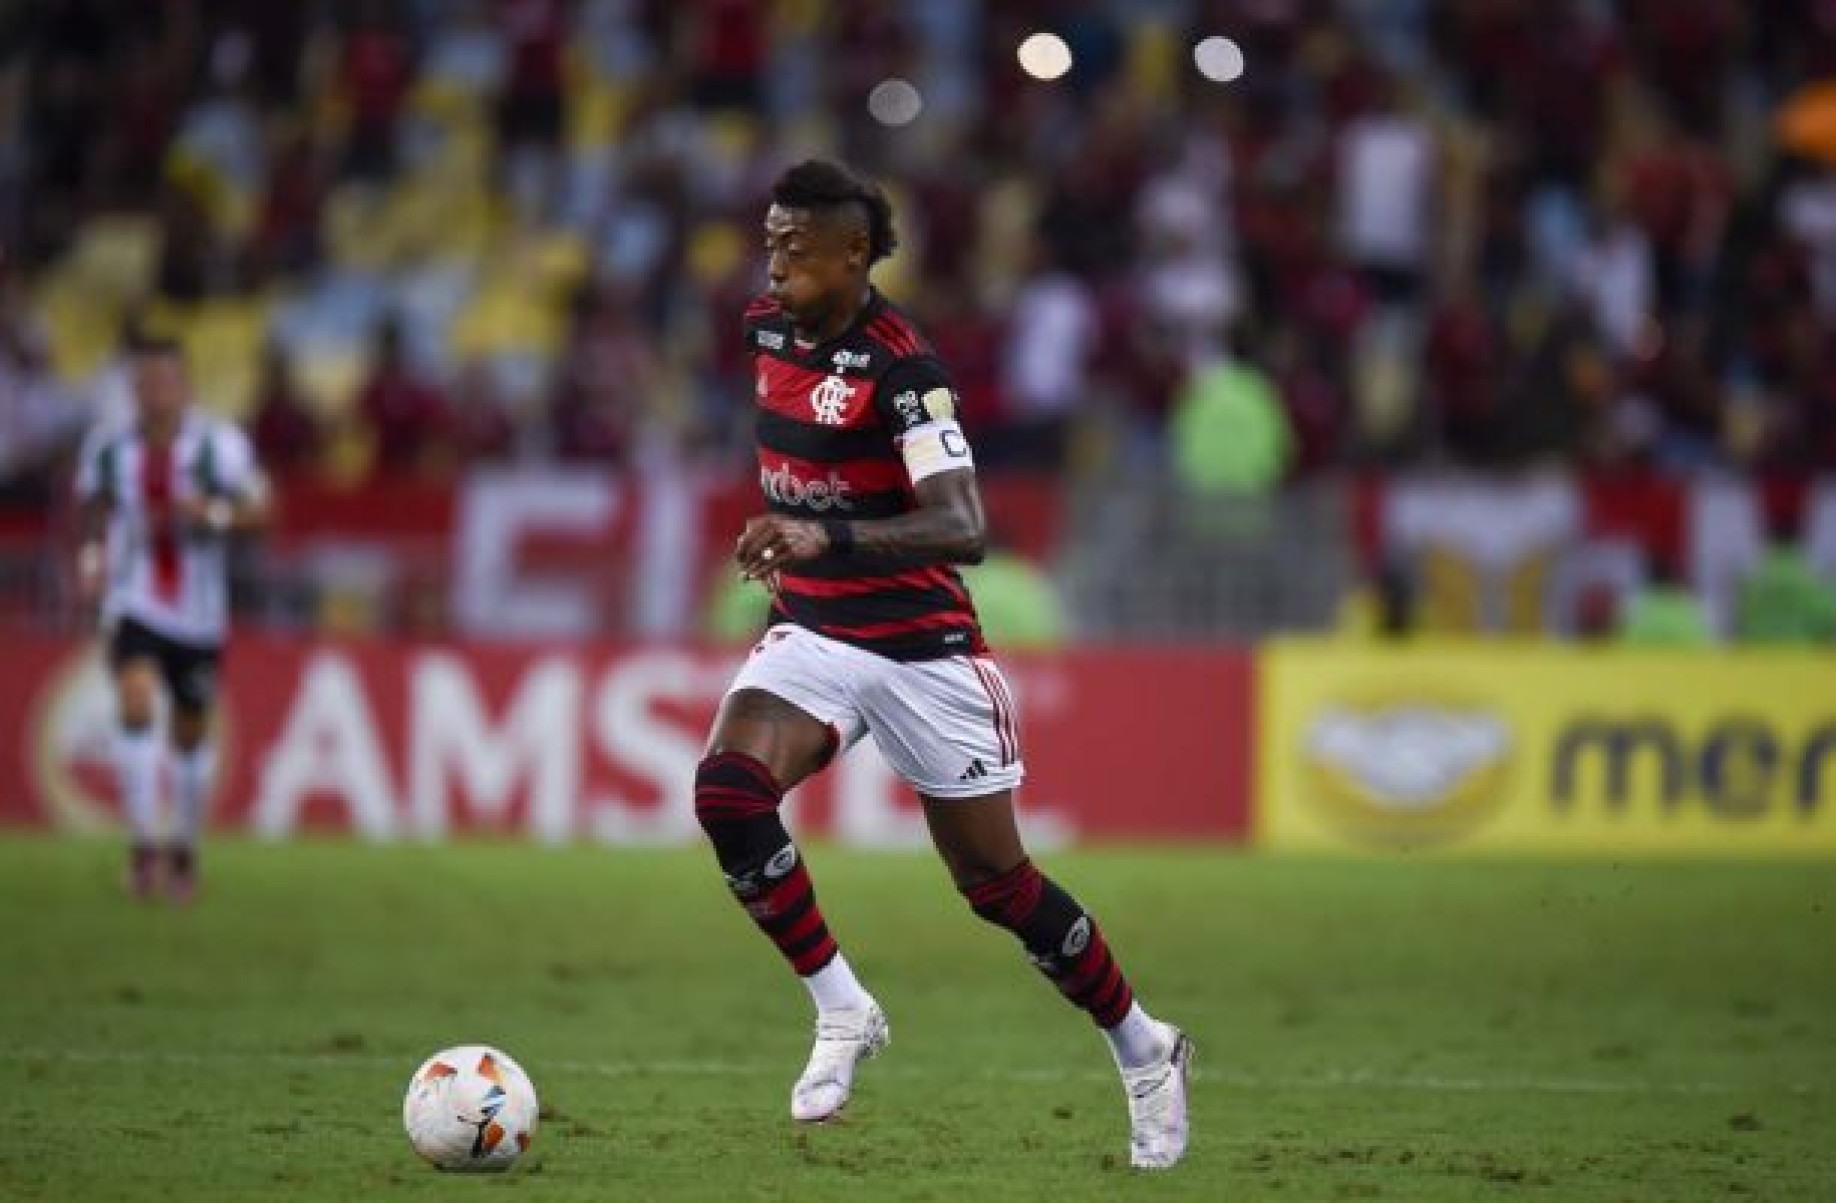 BH segue lesionado e desfalca Flamengo diante do Criciúma